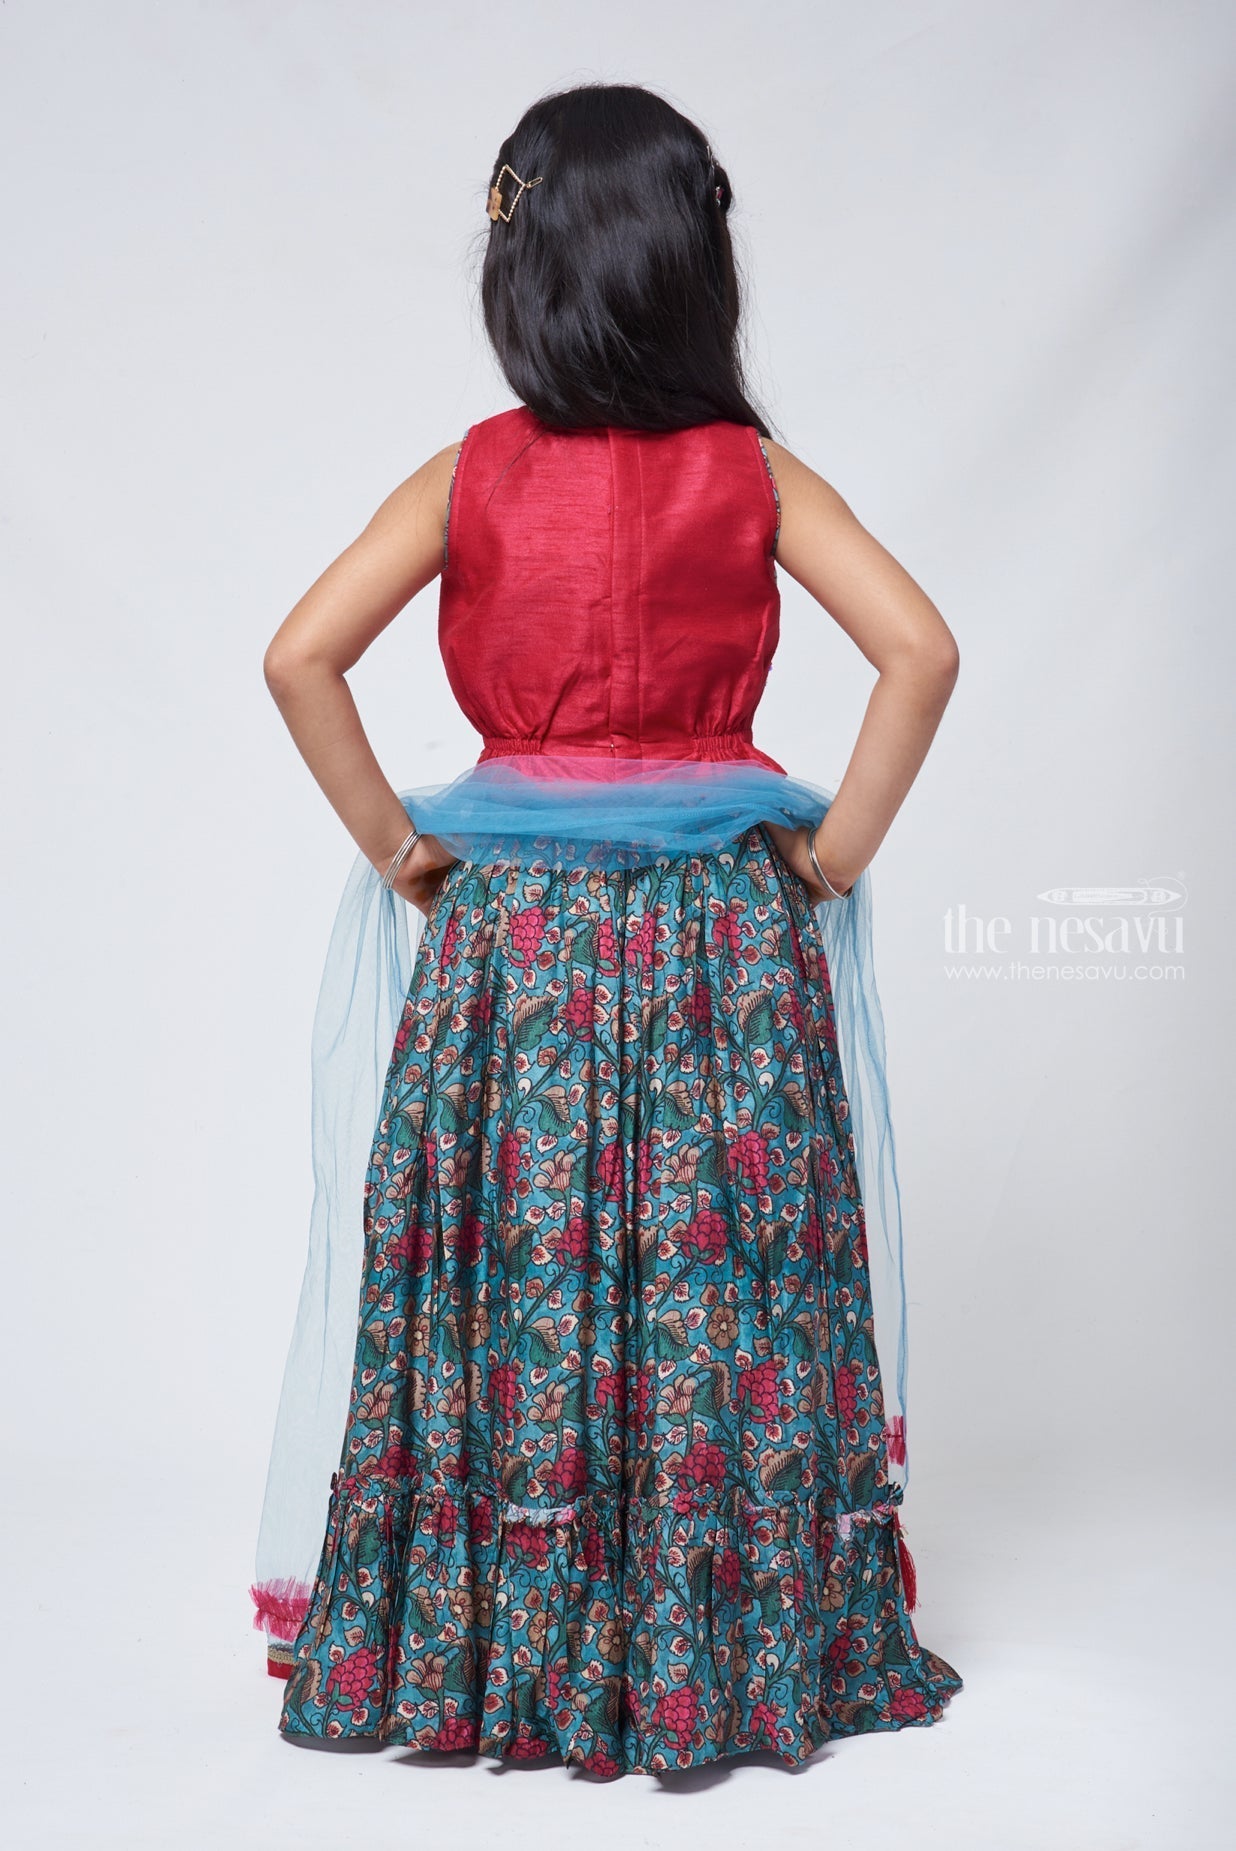 Buy piludi Girl's Nylon Semi-stitched Embroideried(embelished) designer  Lehenga Choli (12-13 Years, Black) at Amazon.in